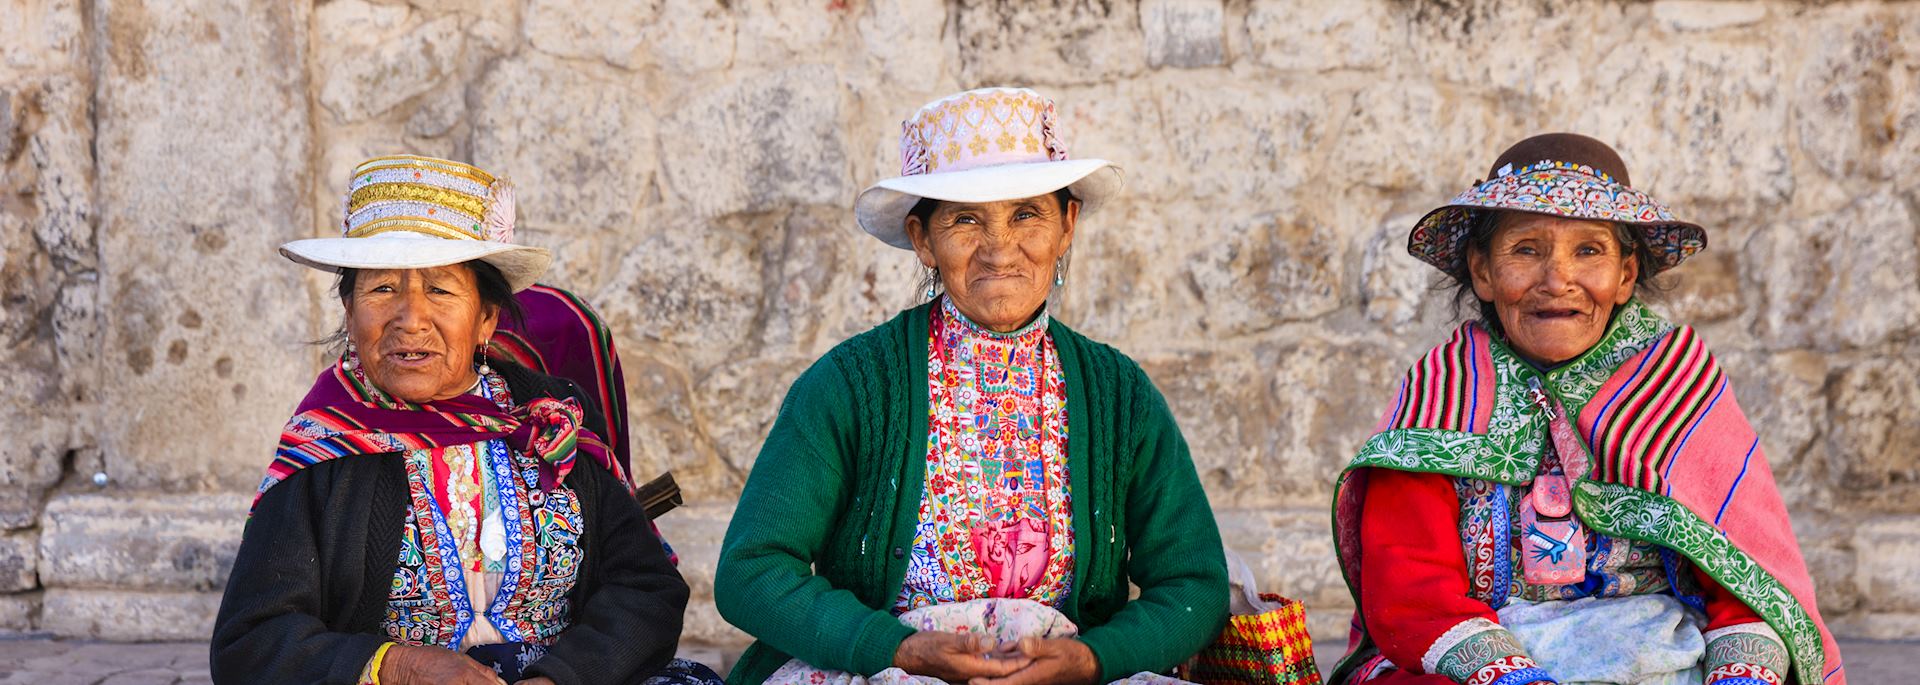 Peruvian women in national costume, Chivay